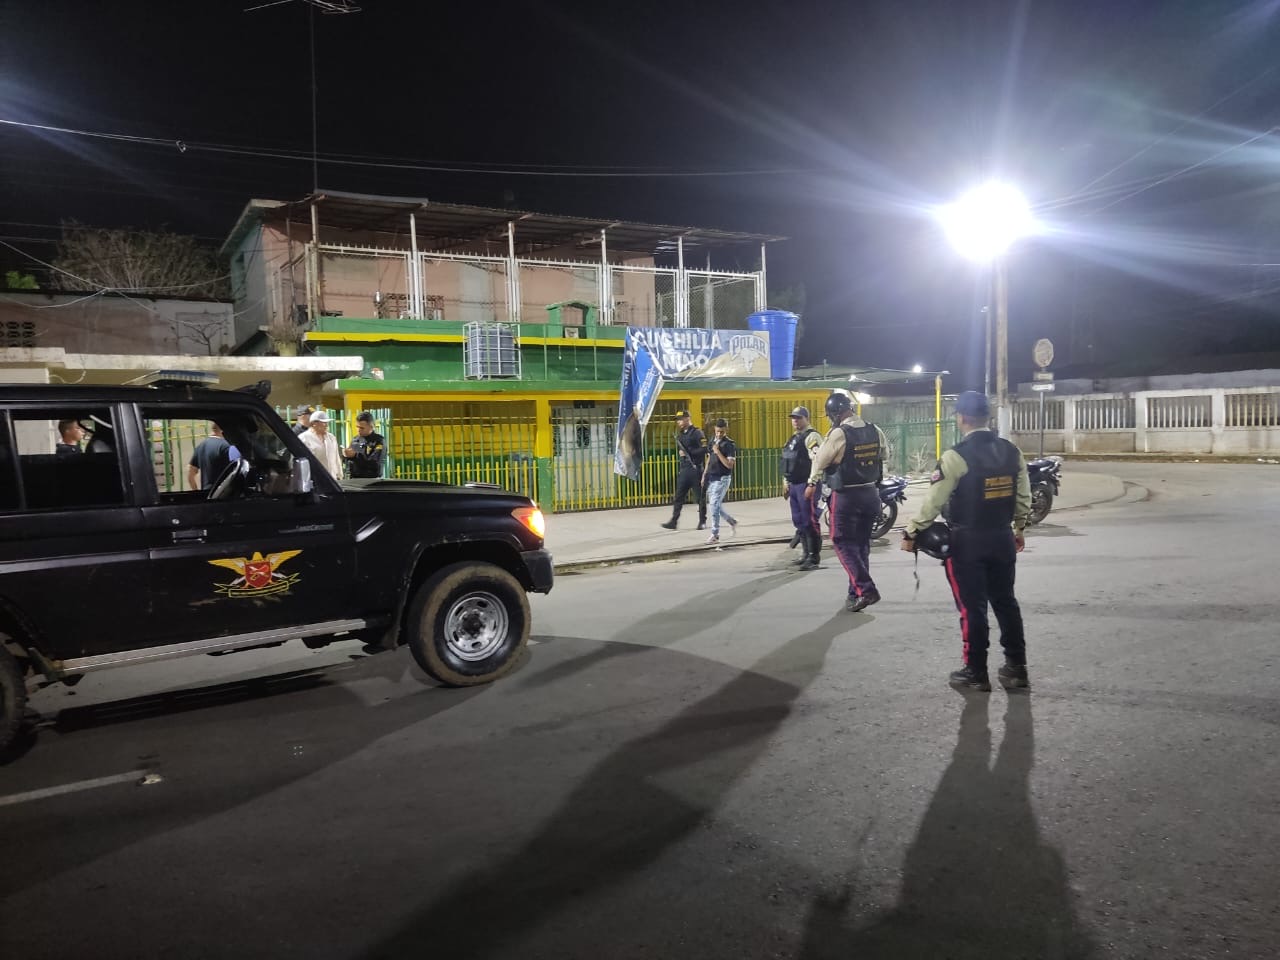 Imagen de la noticia: Municipio Cabimas: Lanzan artefacto explosivo en establecimiento comercial de la ciudad